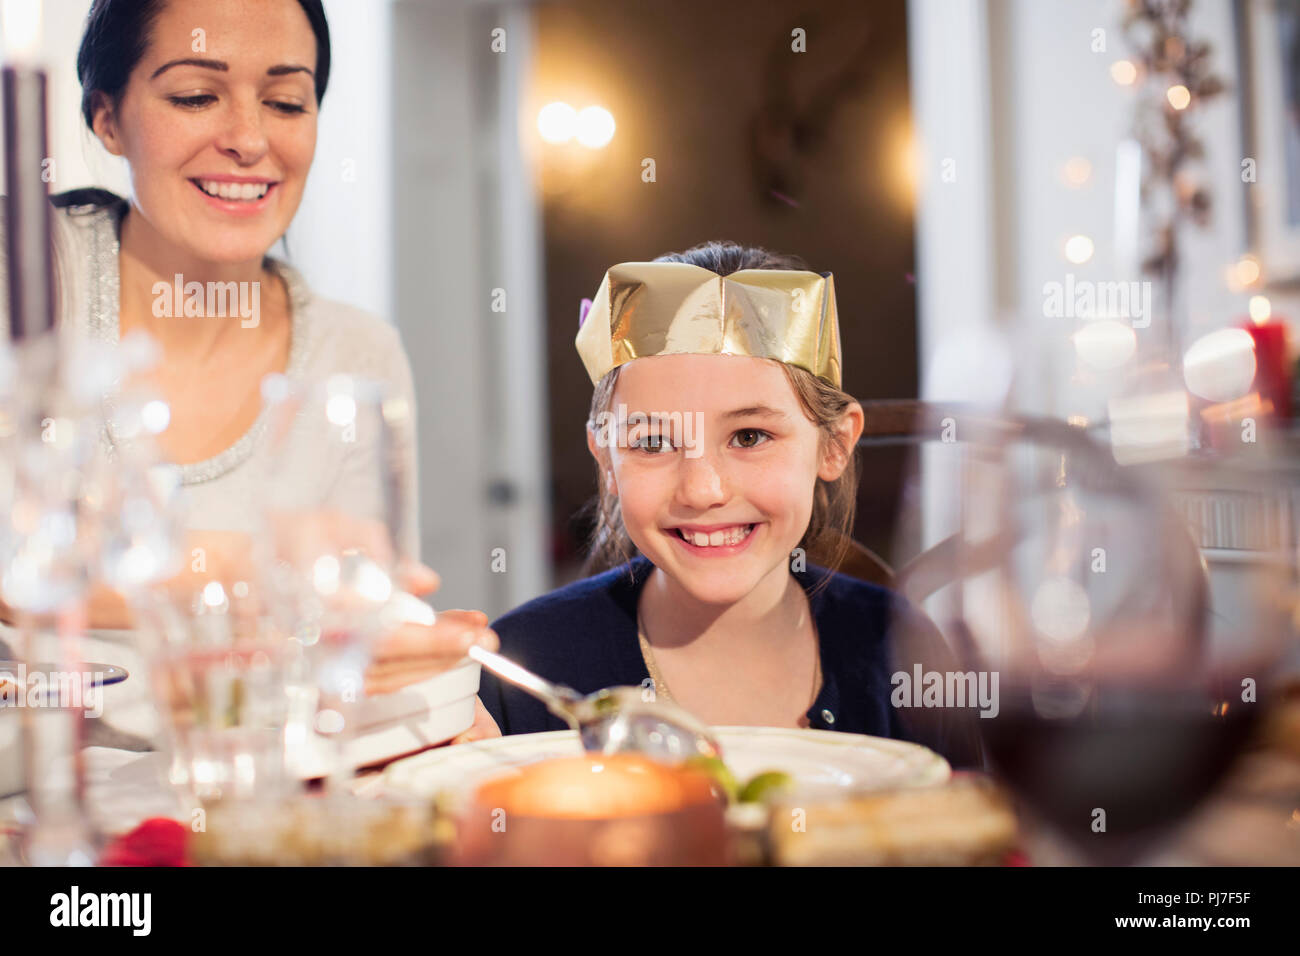 Sonriendo, madre e hija en paper crown disfrutando de la cena de Navidad Foto de stock